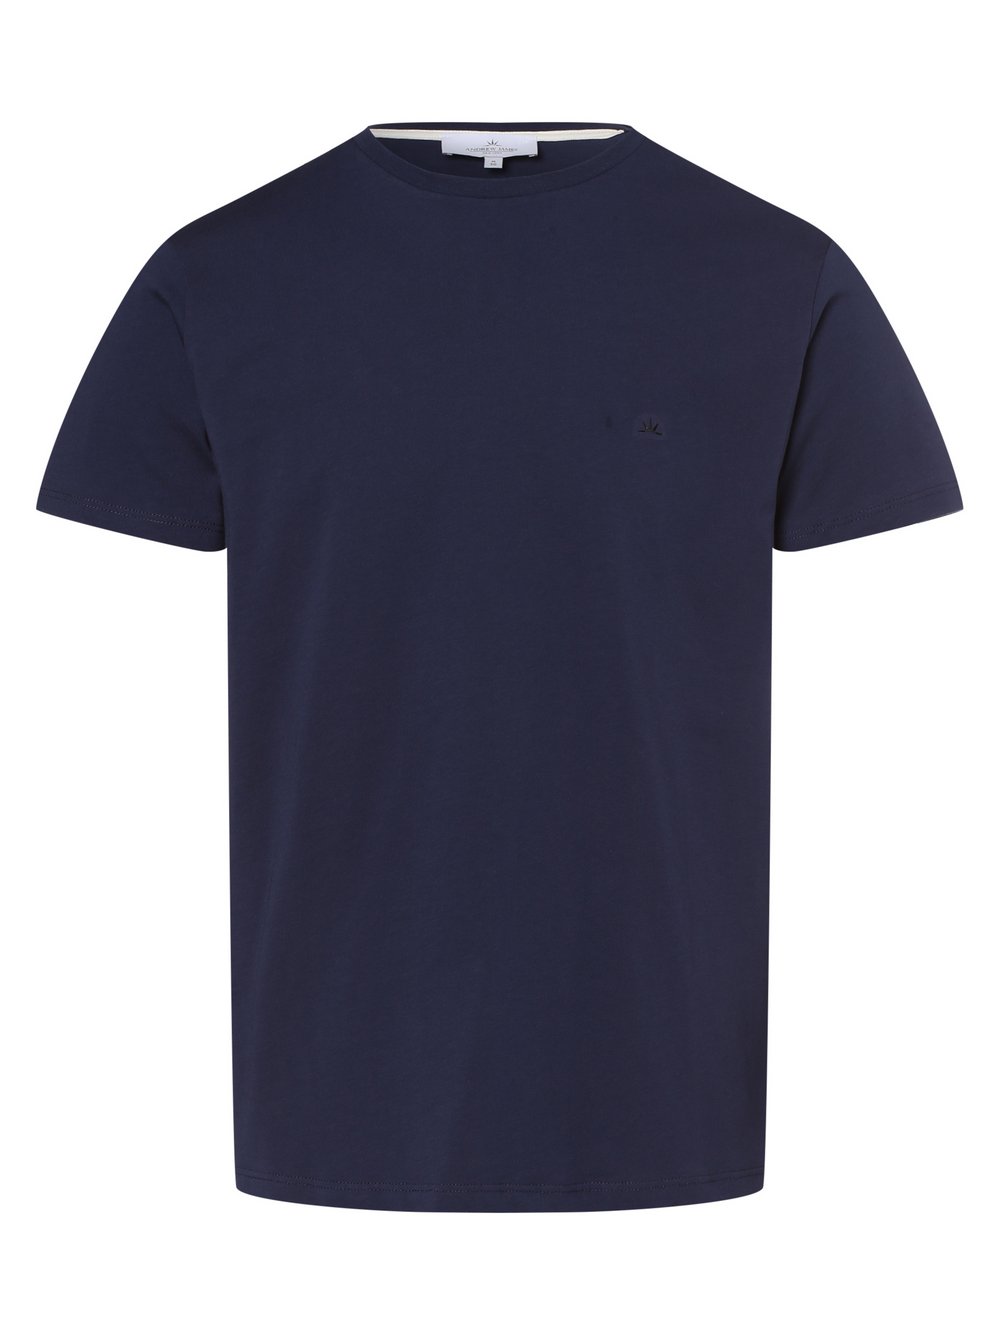 Andrew James New York - T-shirt męski, niebieski